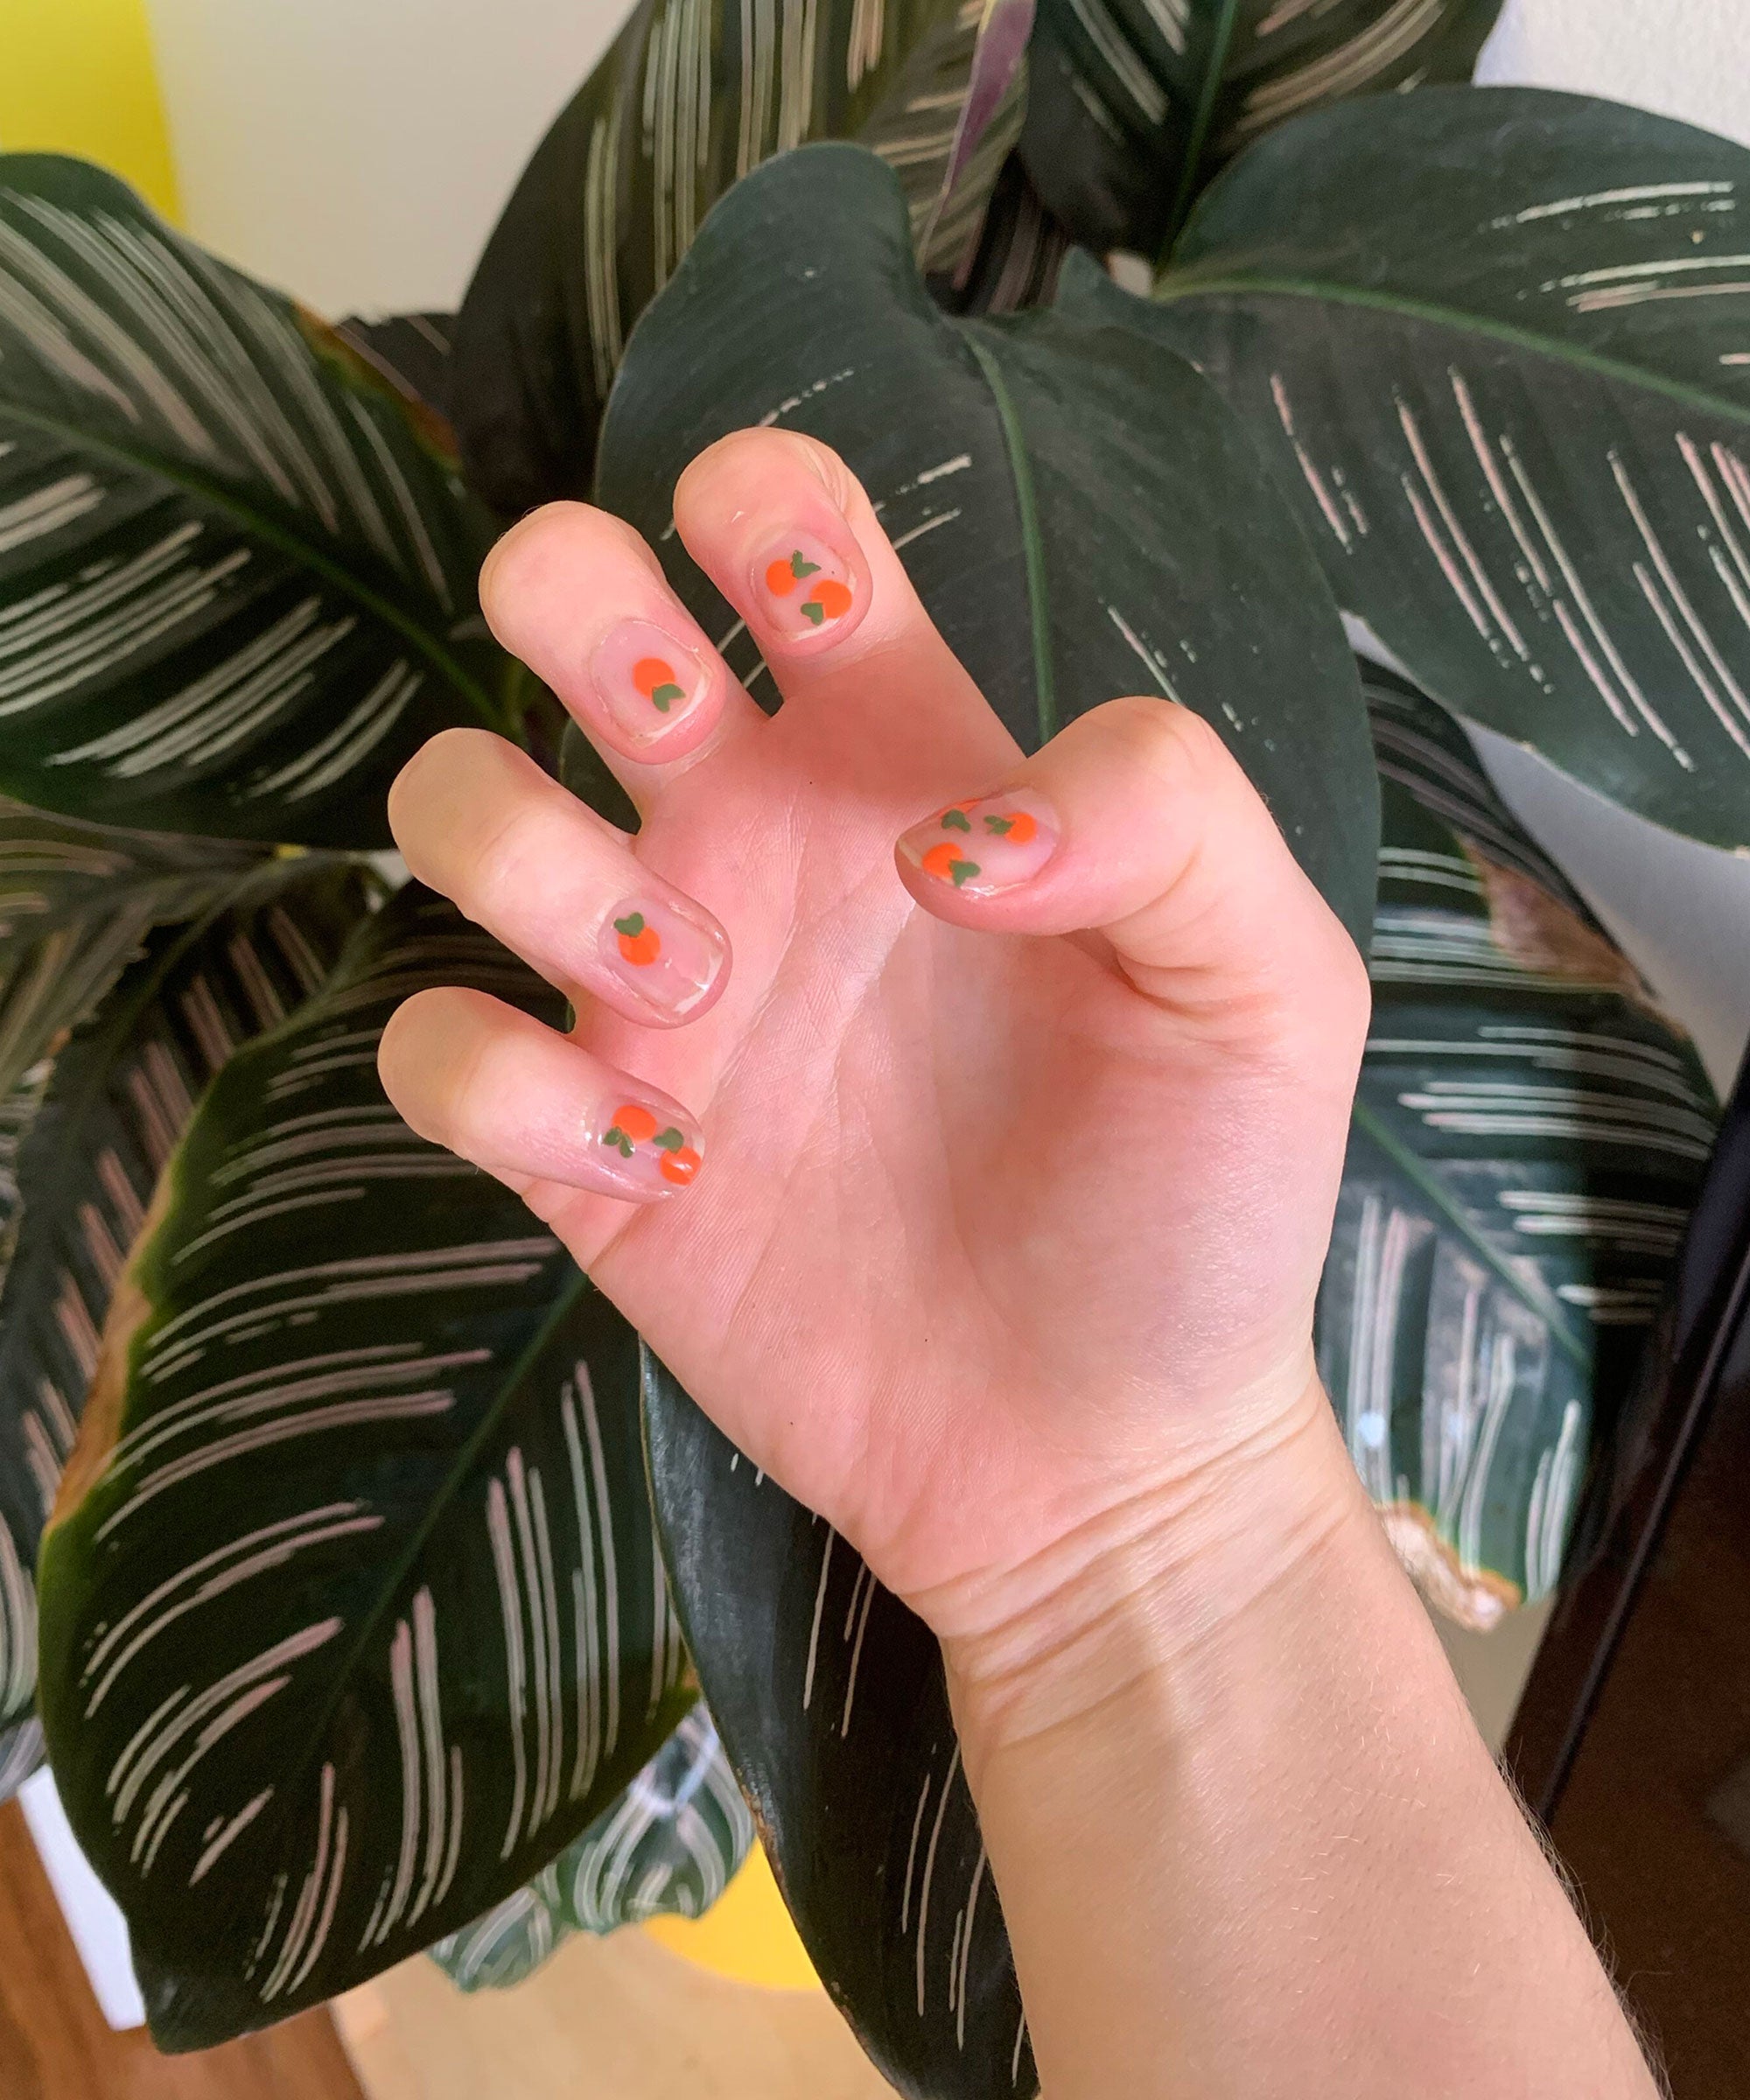 New 2020 Nail Art Using Needle Compilation - YouTube | Work nails, Dot nail  art, New nail art design